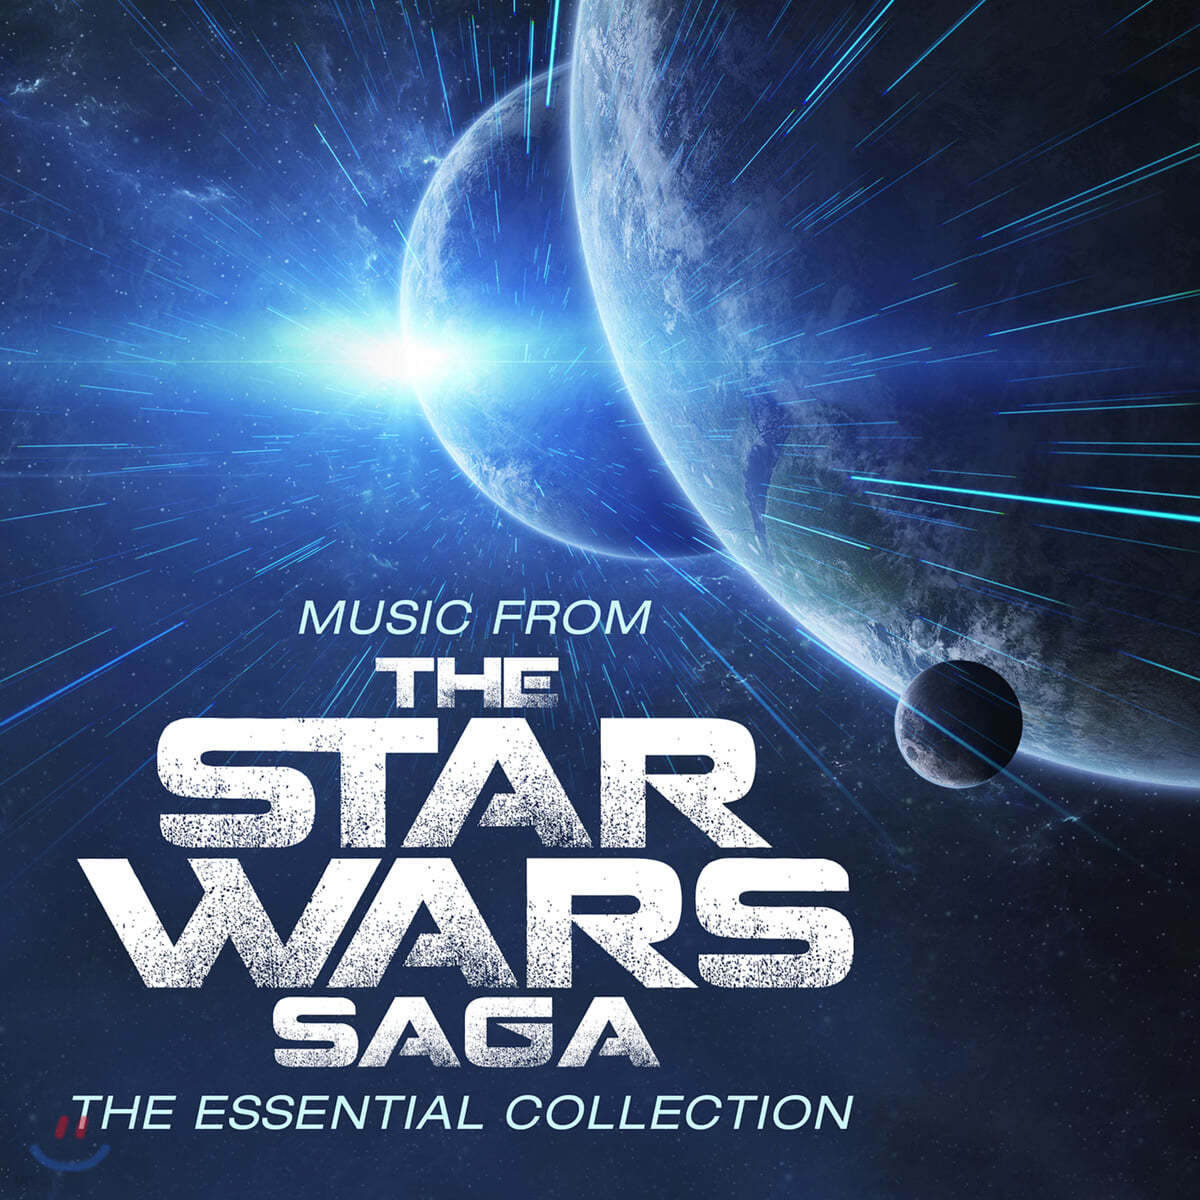 스타워즈 영화음악 베스트 모음집 (Music From The Star Wars Saga - The Essential Collection by John Williams)